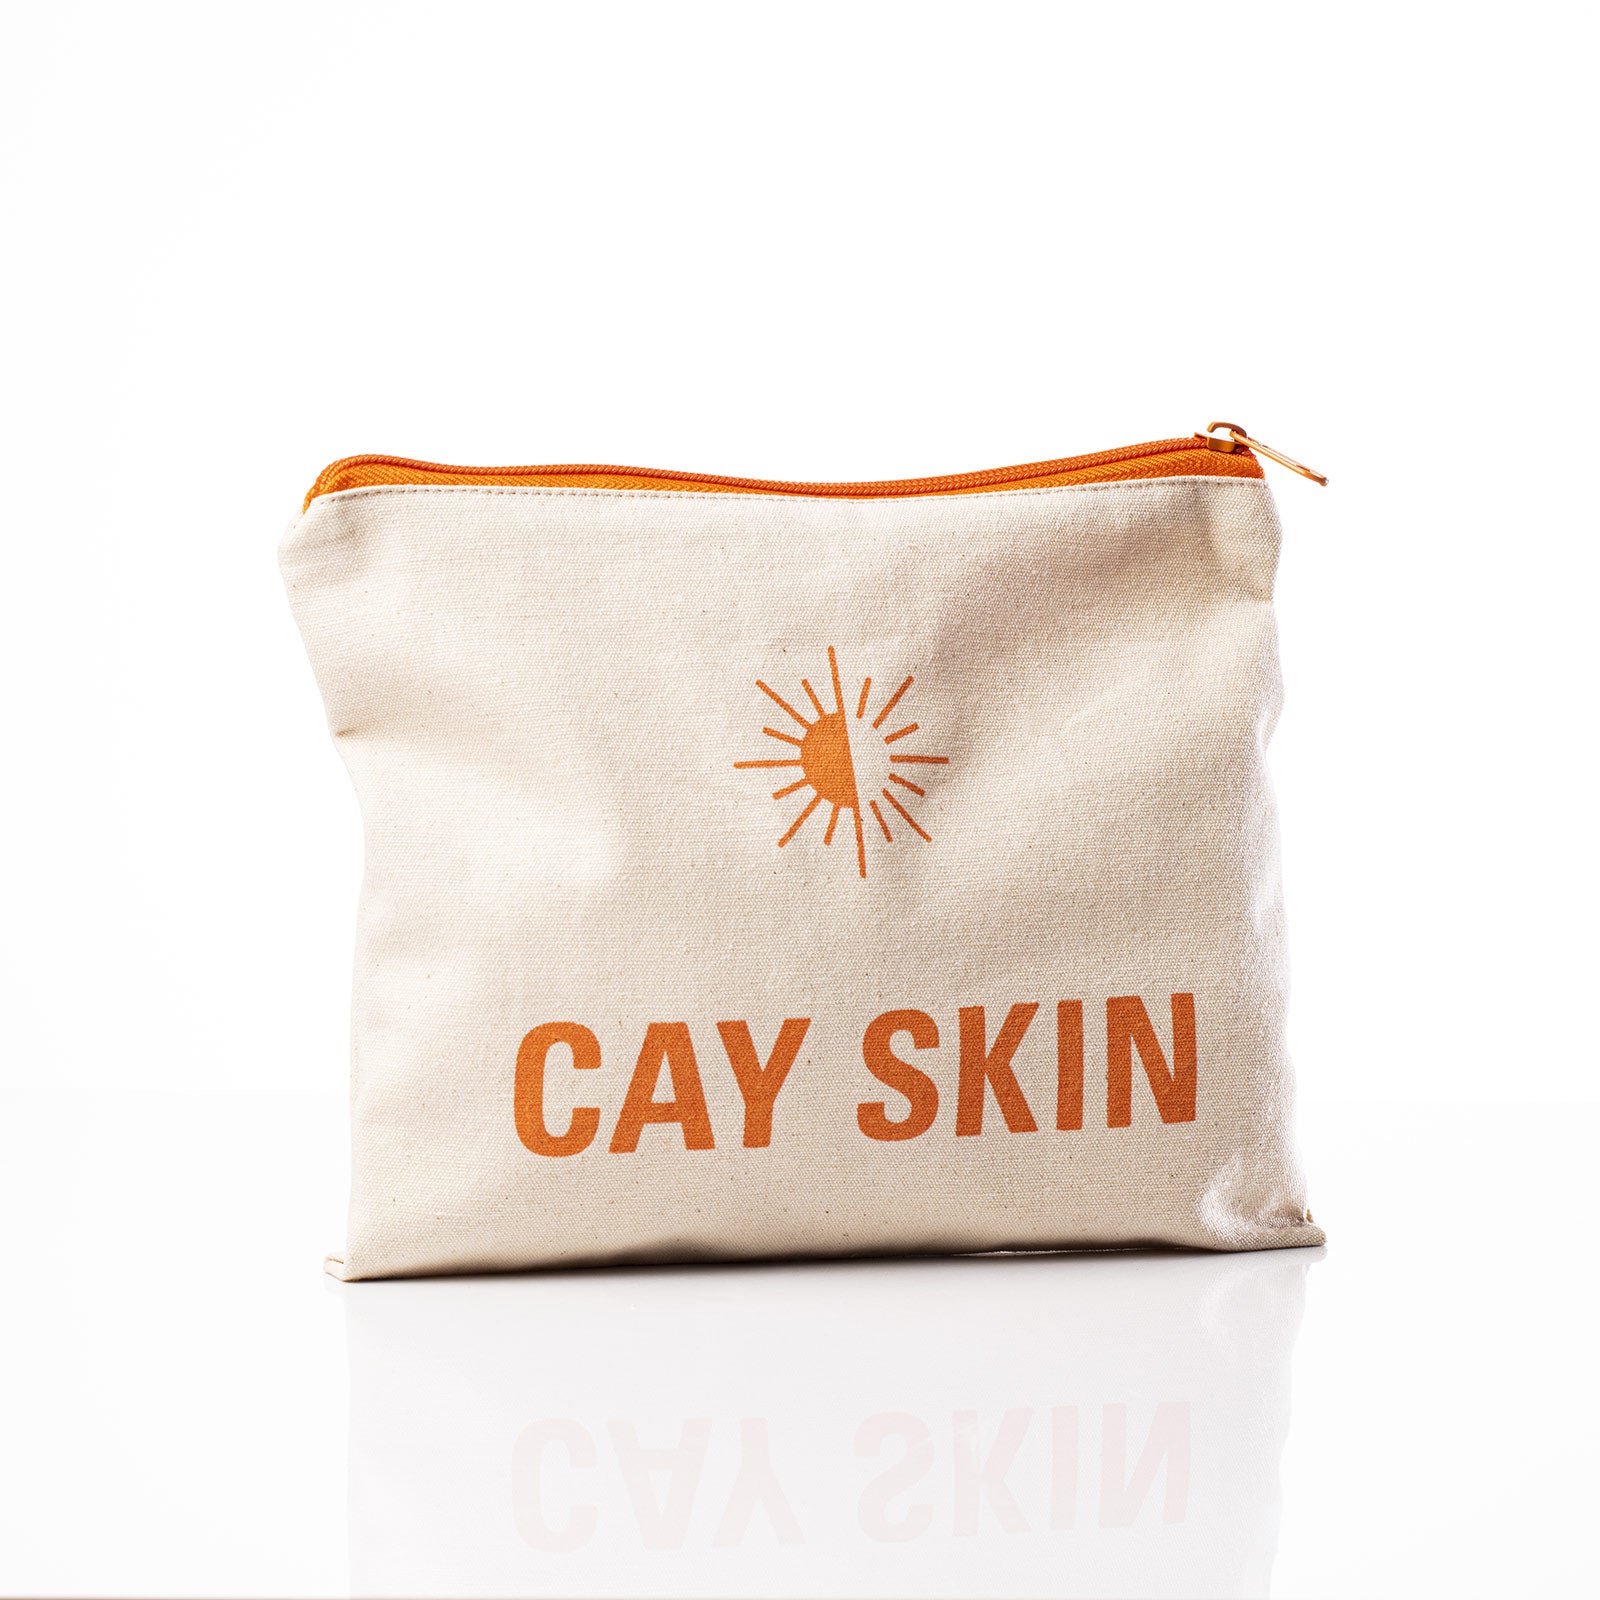 Cay Skin Canvas Makeup Bag